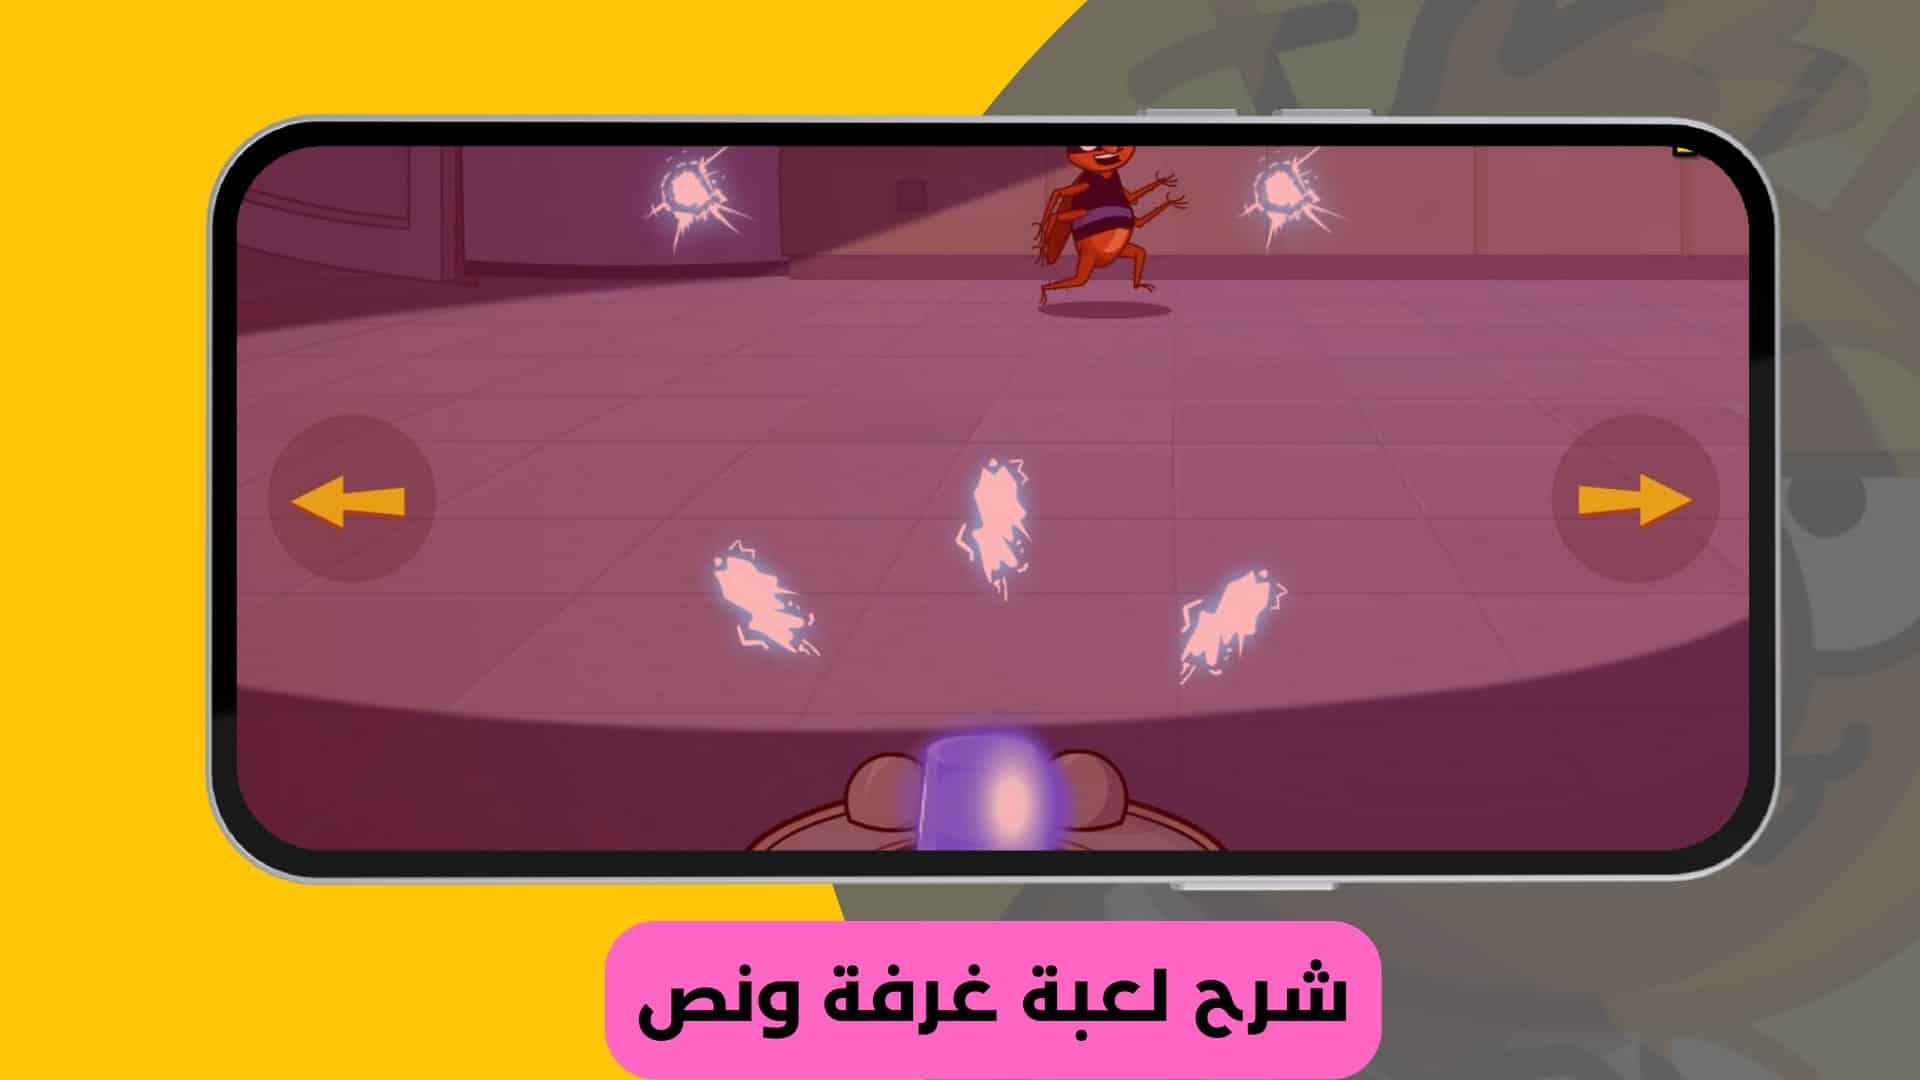 تنزيل لعبة غرفة ونص 2 بالعربي